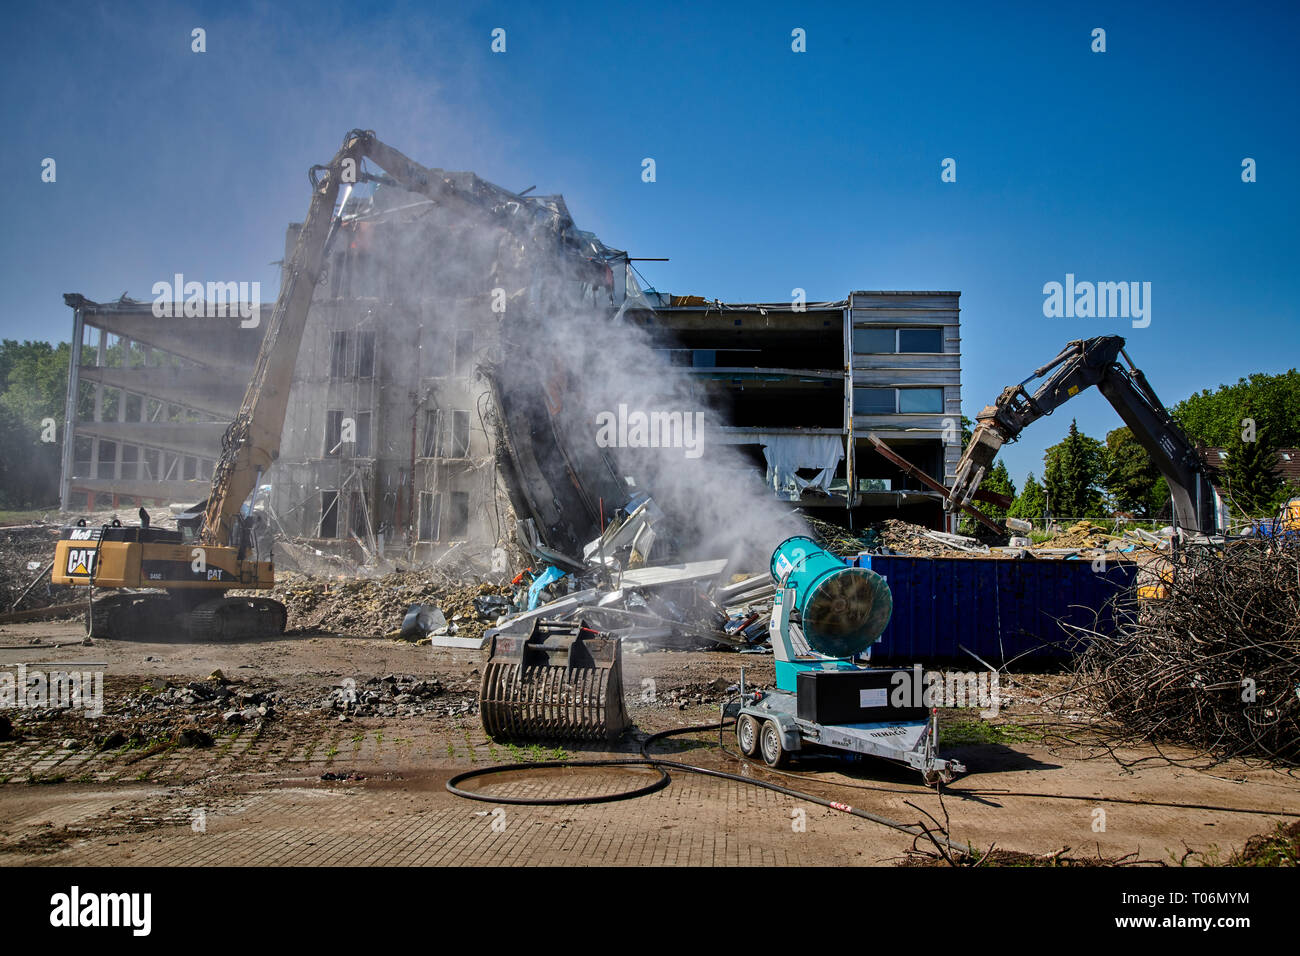 Ein ehemaliges Buerogebaede in Muelheim / Ruhr wird mit schwerem Geraet abgerissen. Der hintere Teil des Gebaedes ist von Sir Normen Foster geplant ge Stock Photo